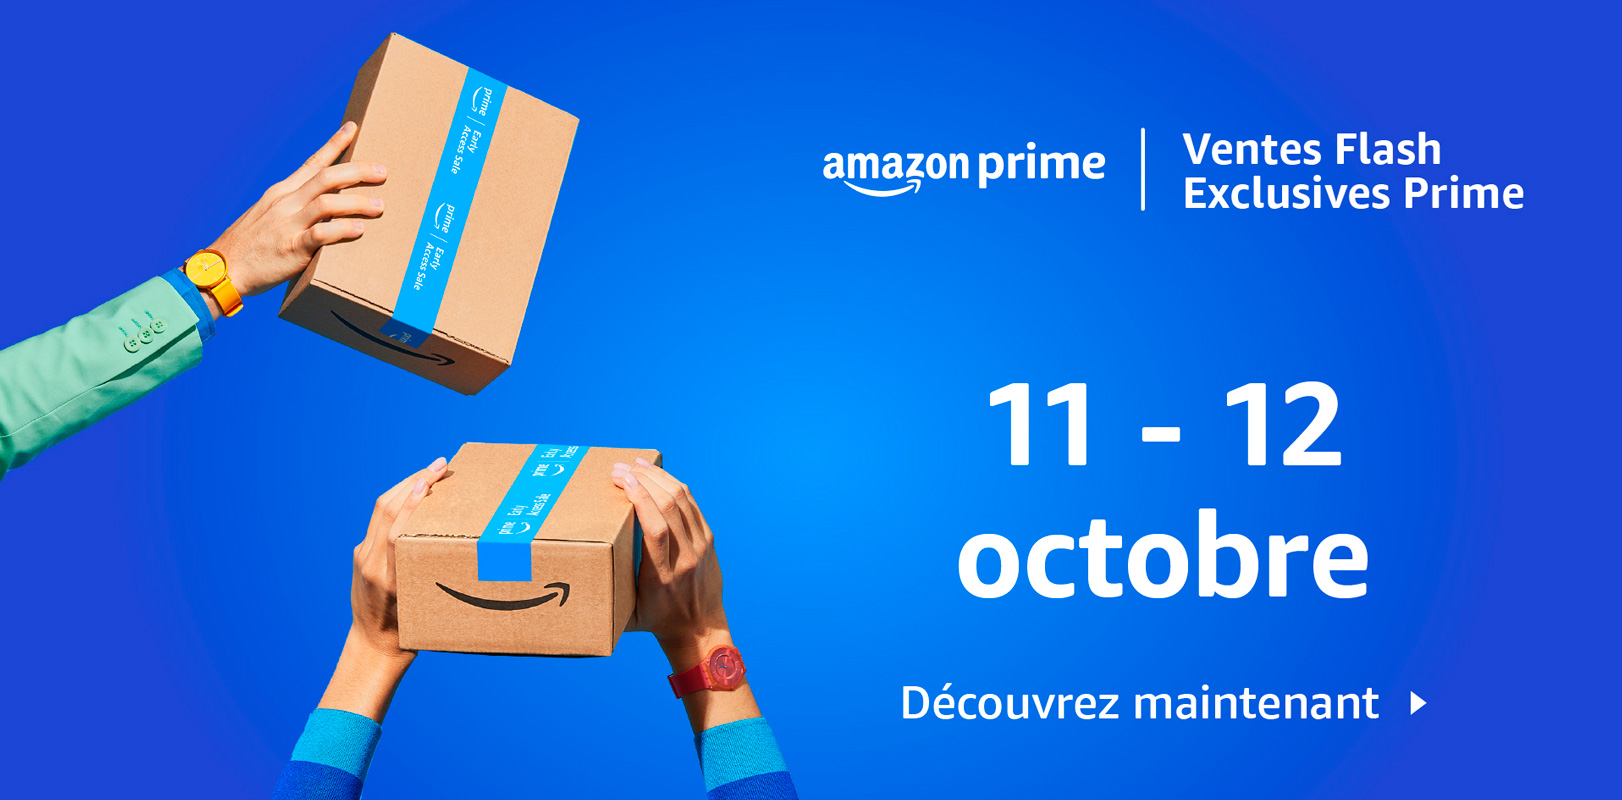 Amazon Ventes Flash Exclusives Prime les 11 et 12 octobre